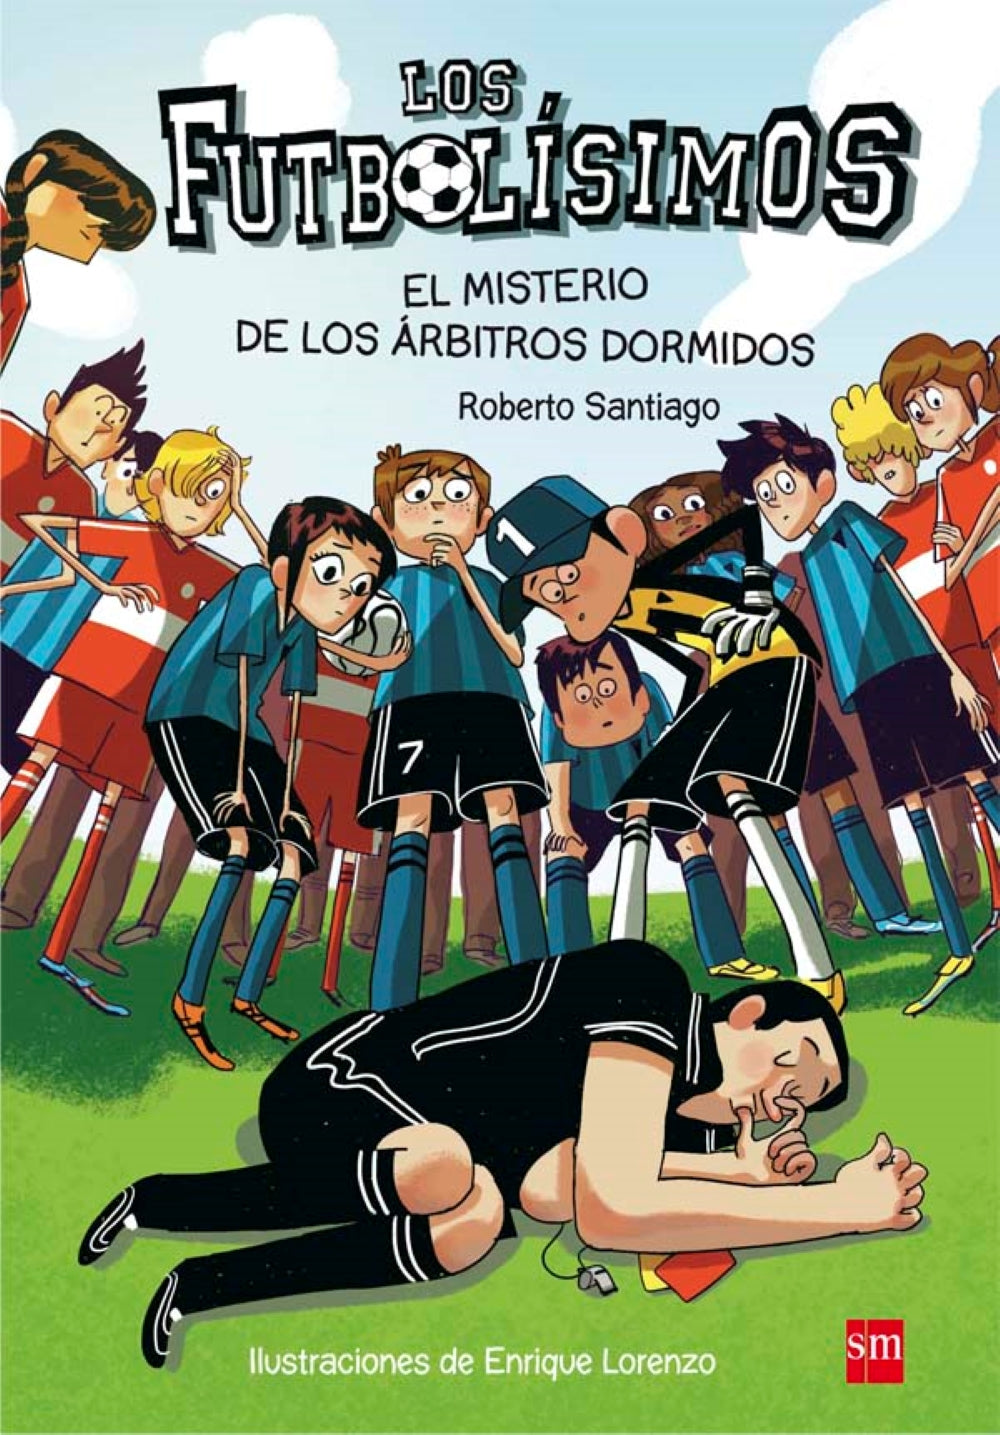 Roberto Santiago: Los Futbolísimos 1 - El misterio de los árbitros dormidos, illustrated by Enrique Lorenzo Diaz